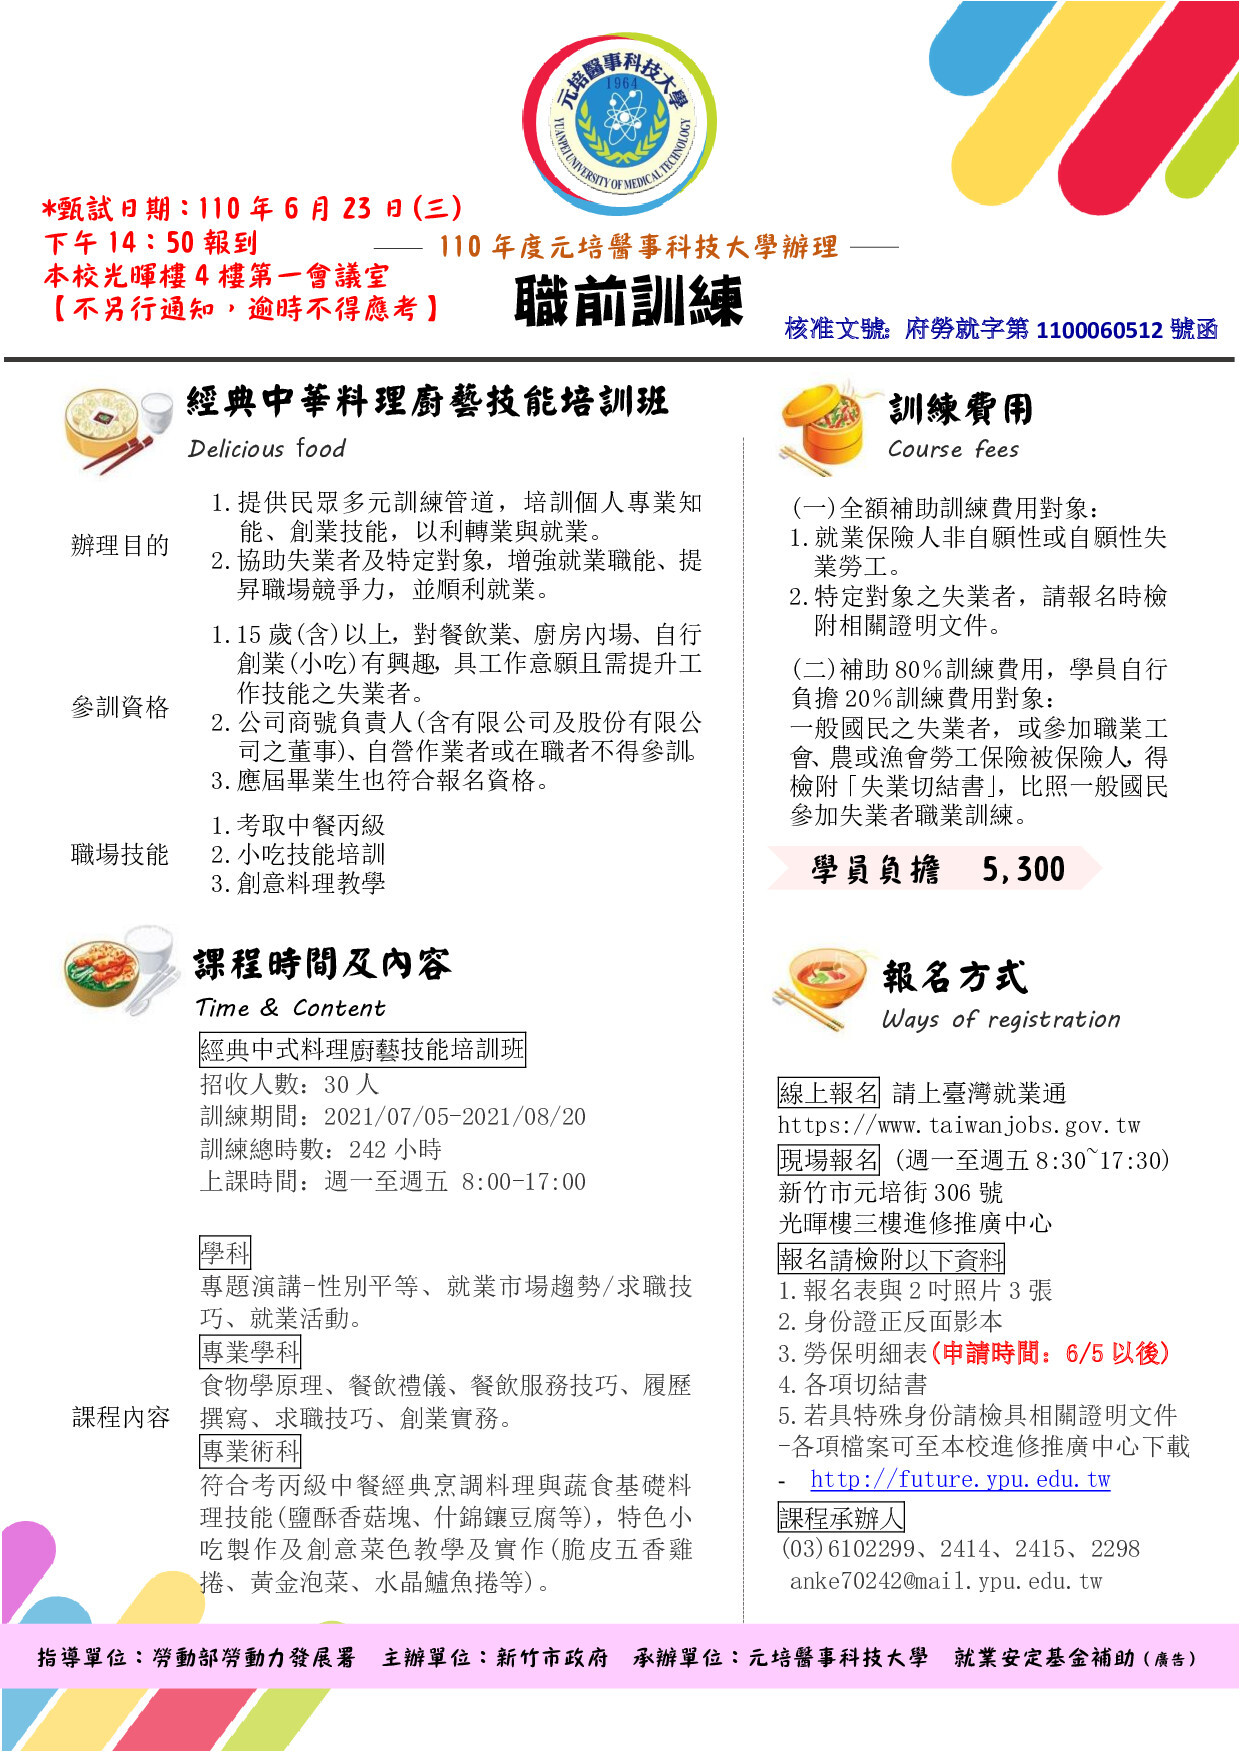 開放報名 110年失業者職業訓練 經典中華料理廚藝技能培訓班 元培推廣教育中心